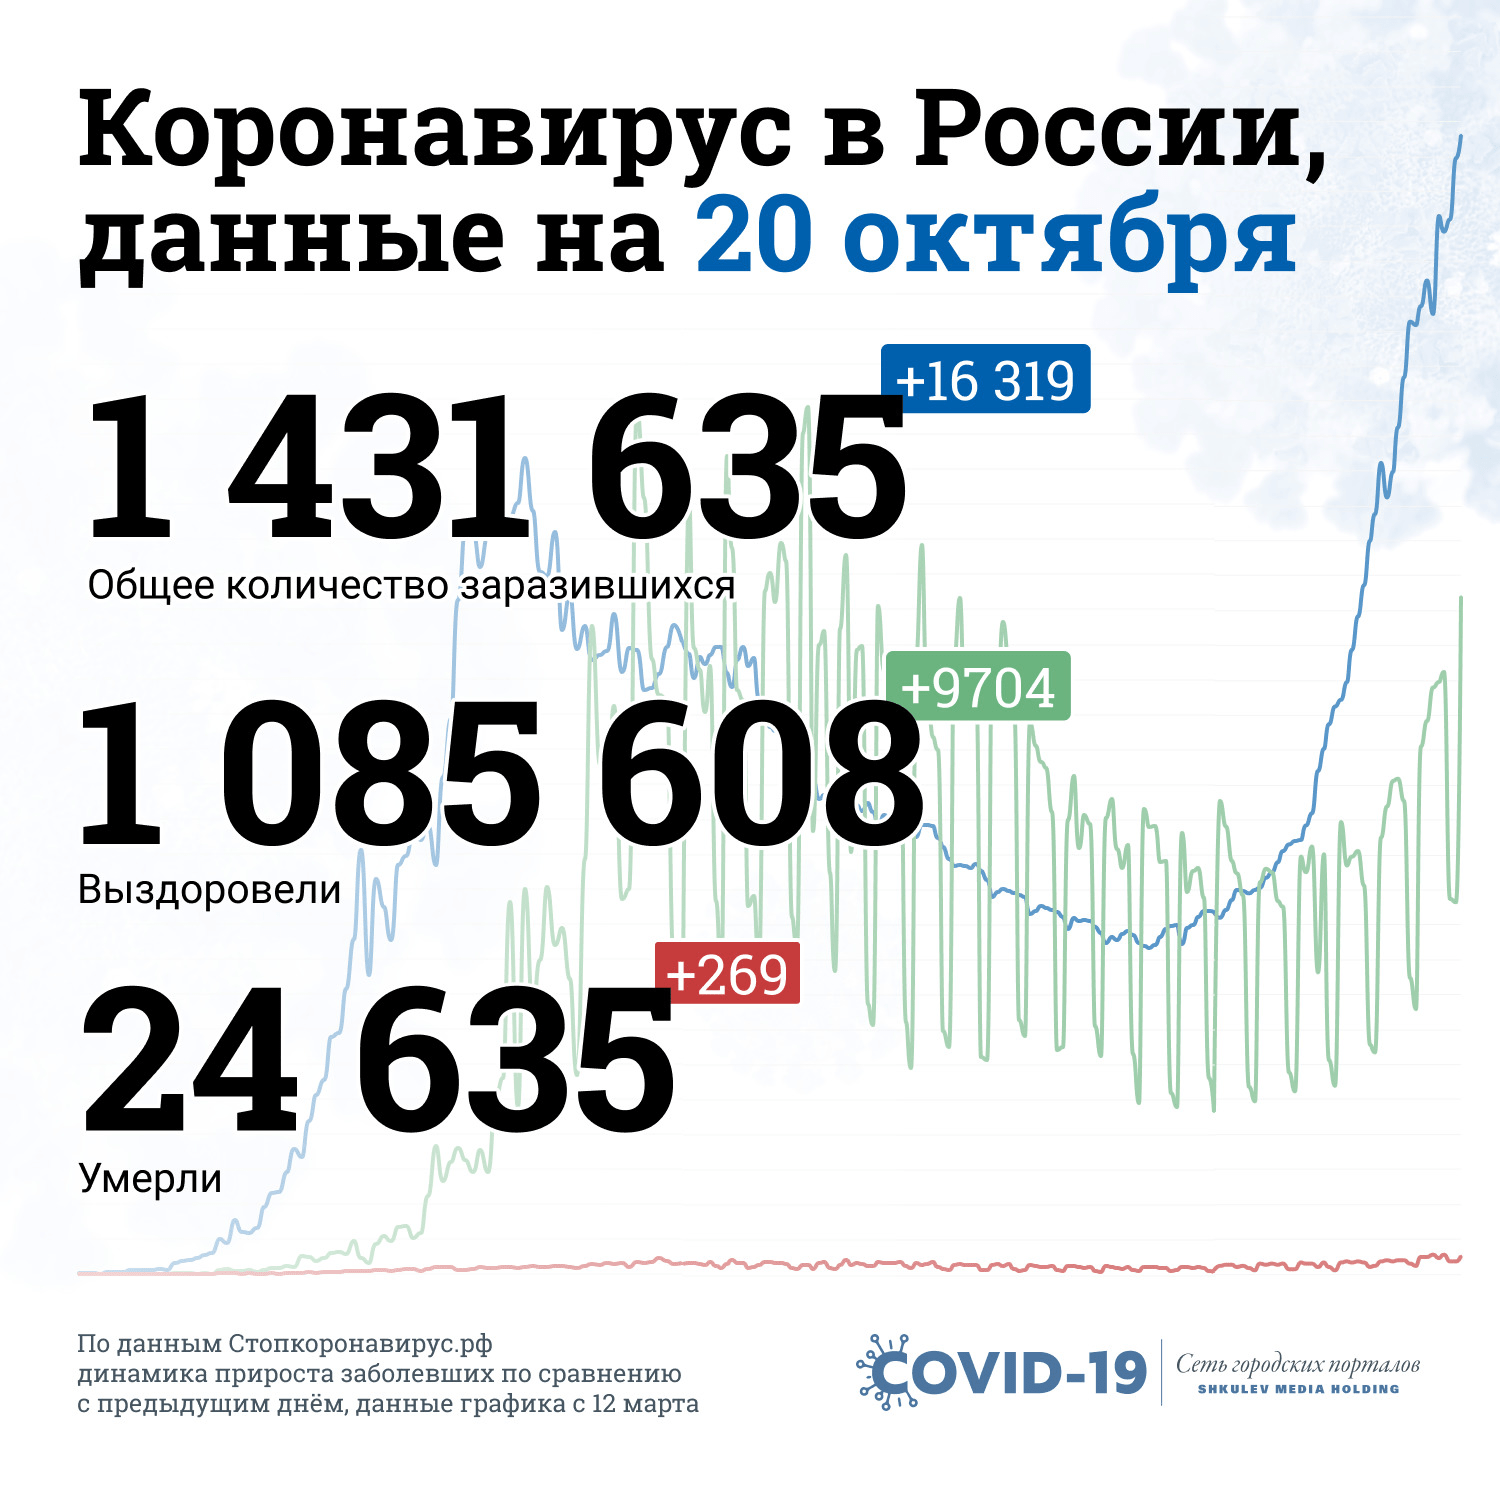 Данные по коронавирусу в России — в одной картинке